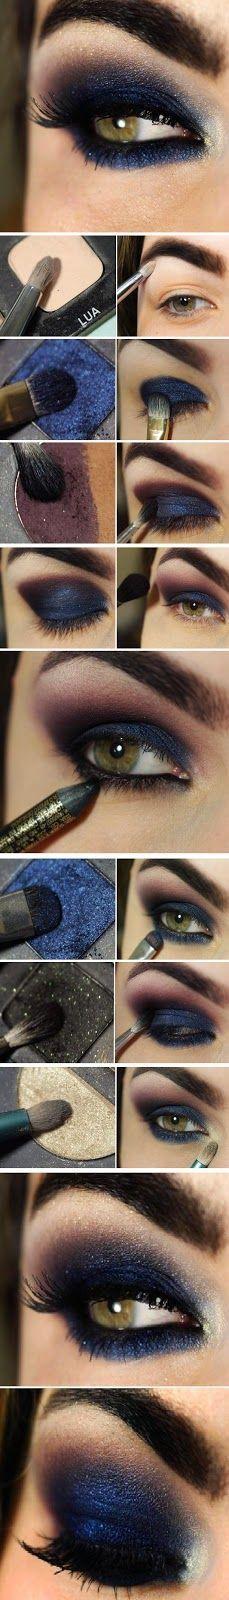 Mariage - DIY Navy Blue Eye Makeup Makeup Eye Shadow How To Diy Makeup Eye Makeup Eye Liner Makeup Tutorials Eye Makeup Tutorials